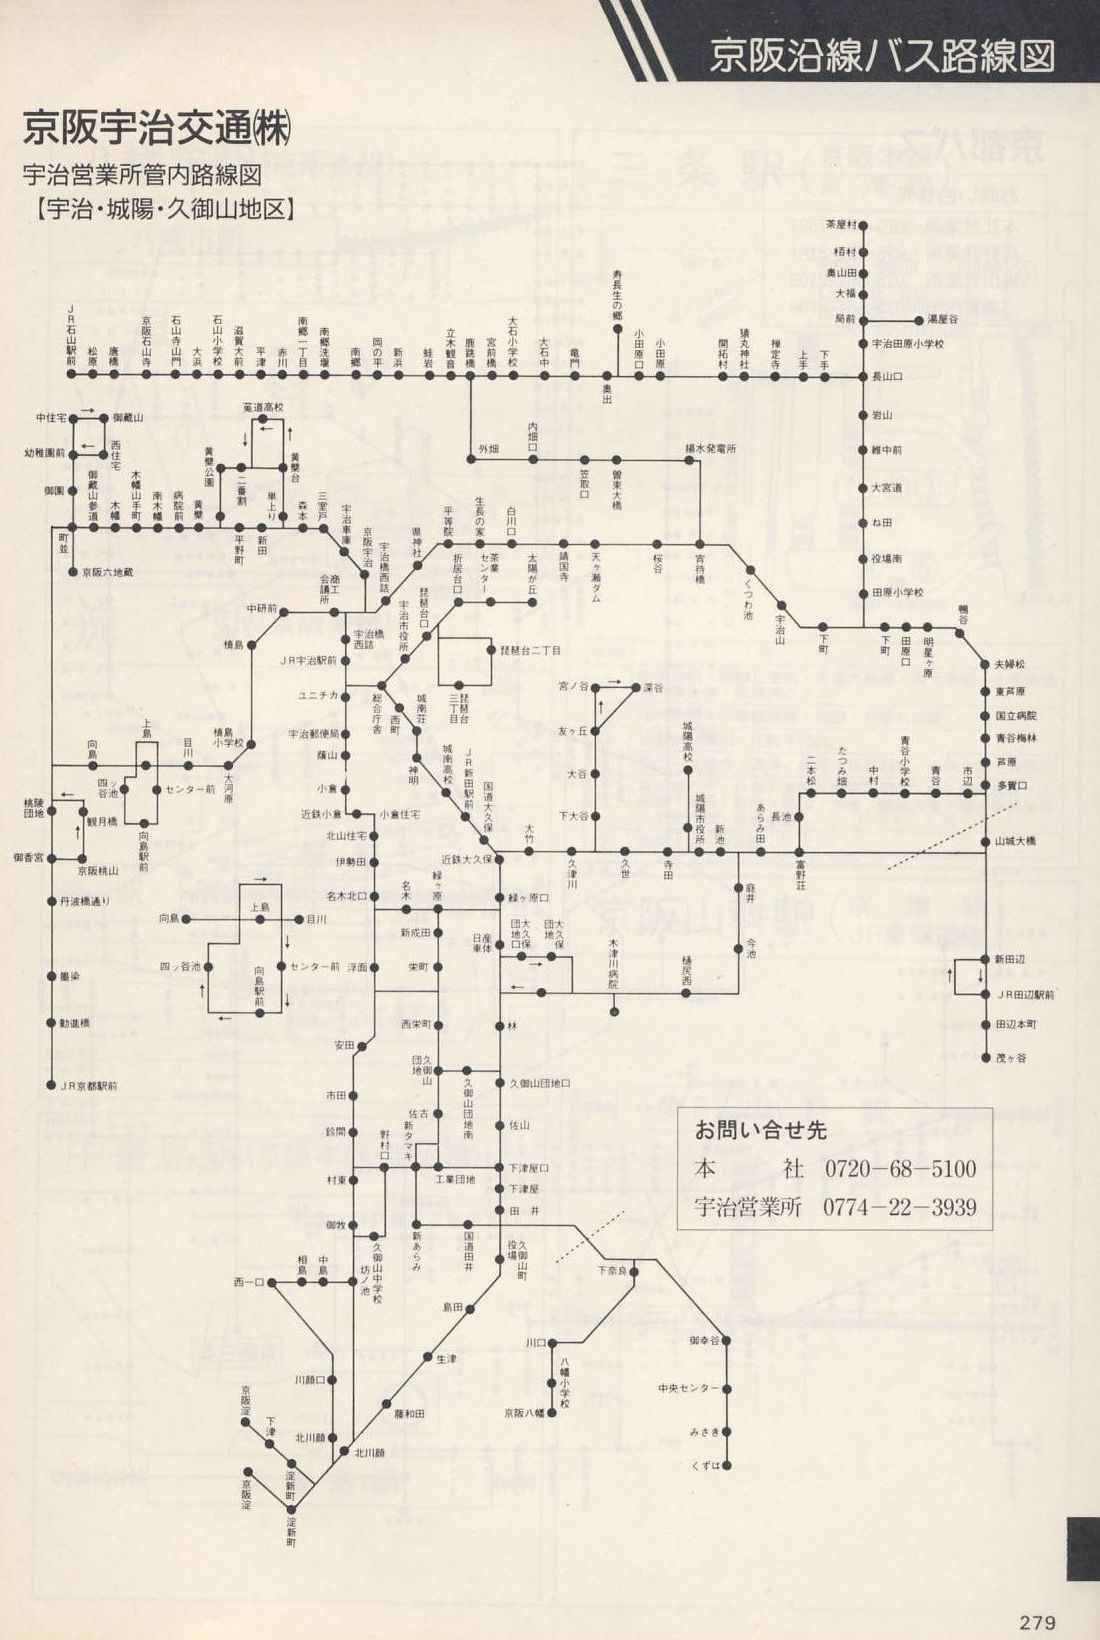 1987-06-01改正_京阪電気鉄道_冊子時刻表_279(京阪宇治交通路線図)